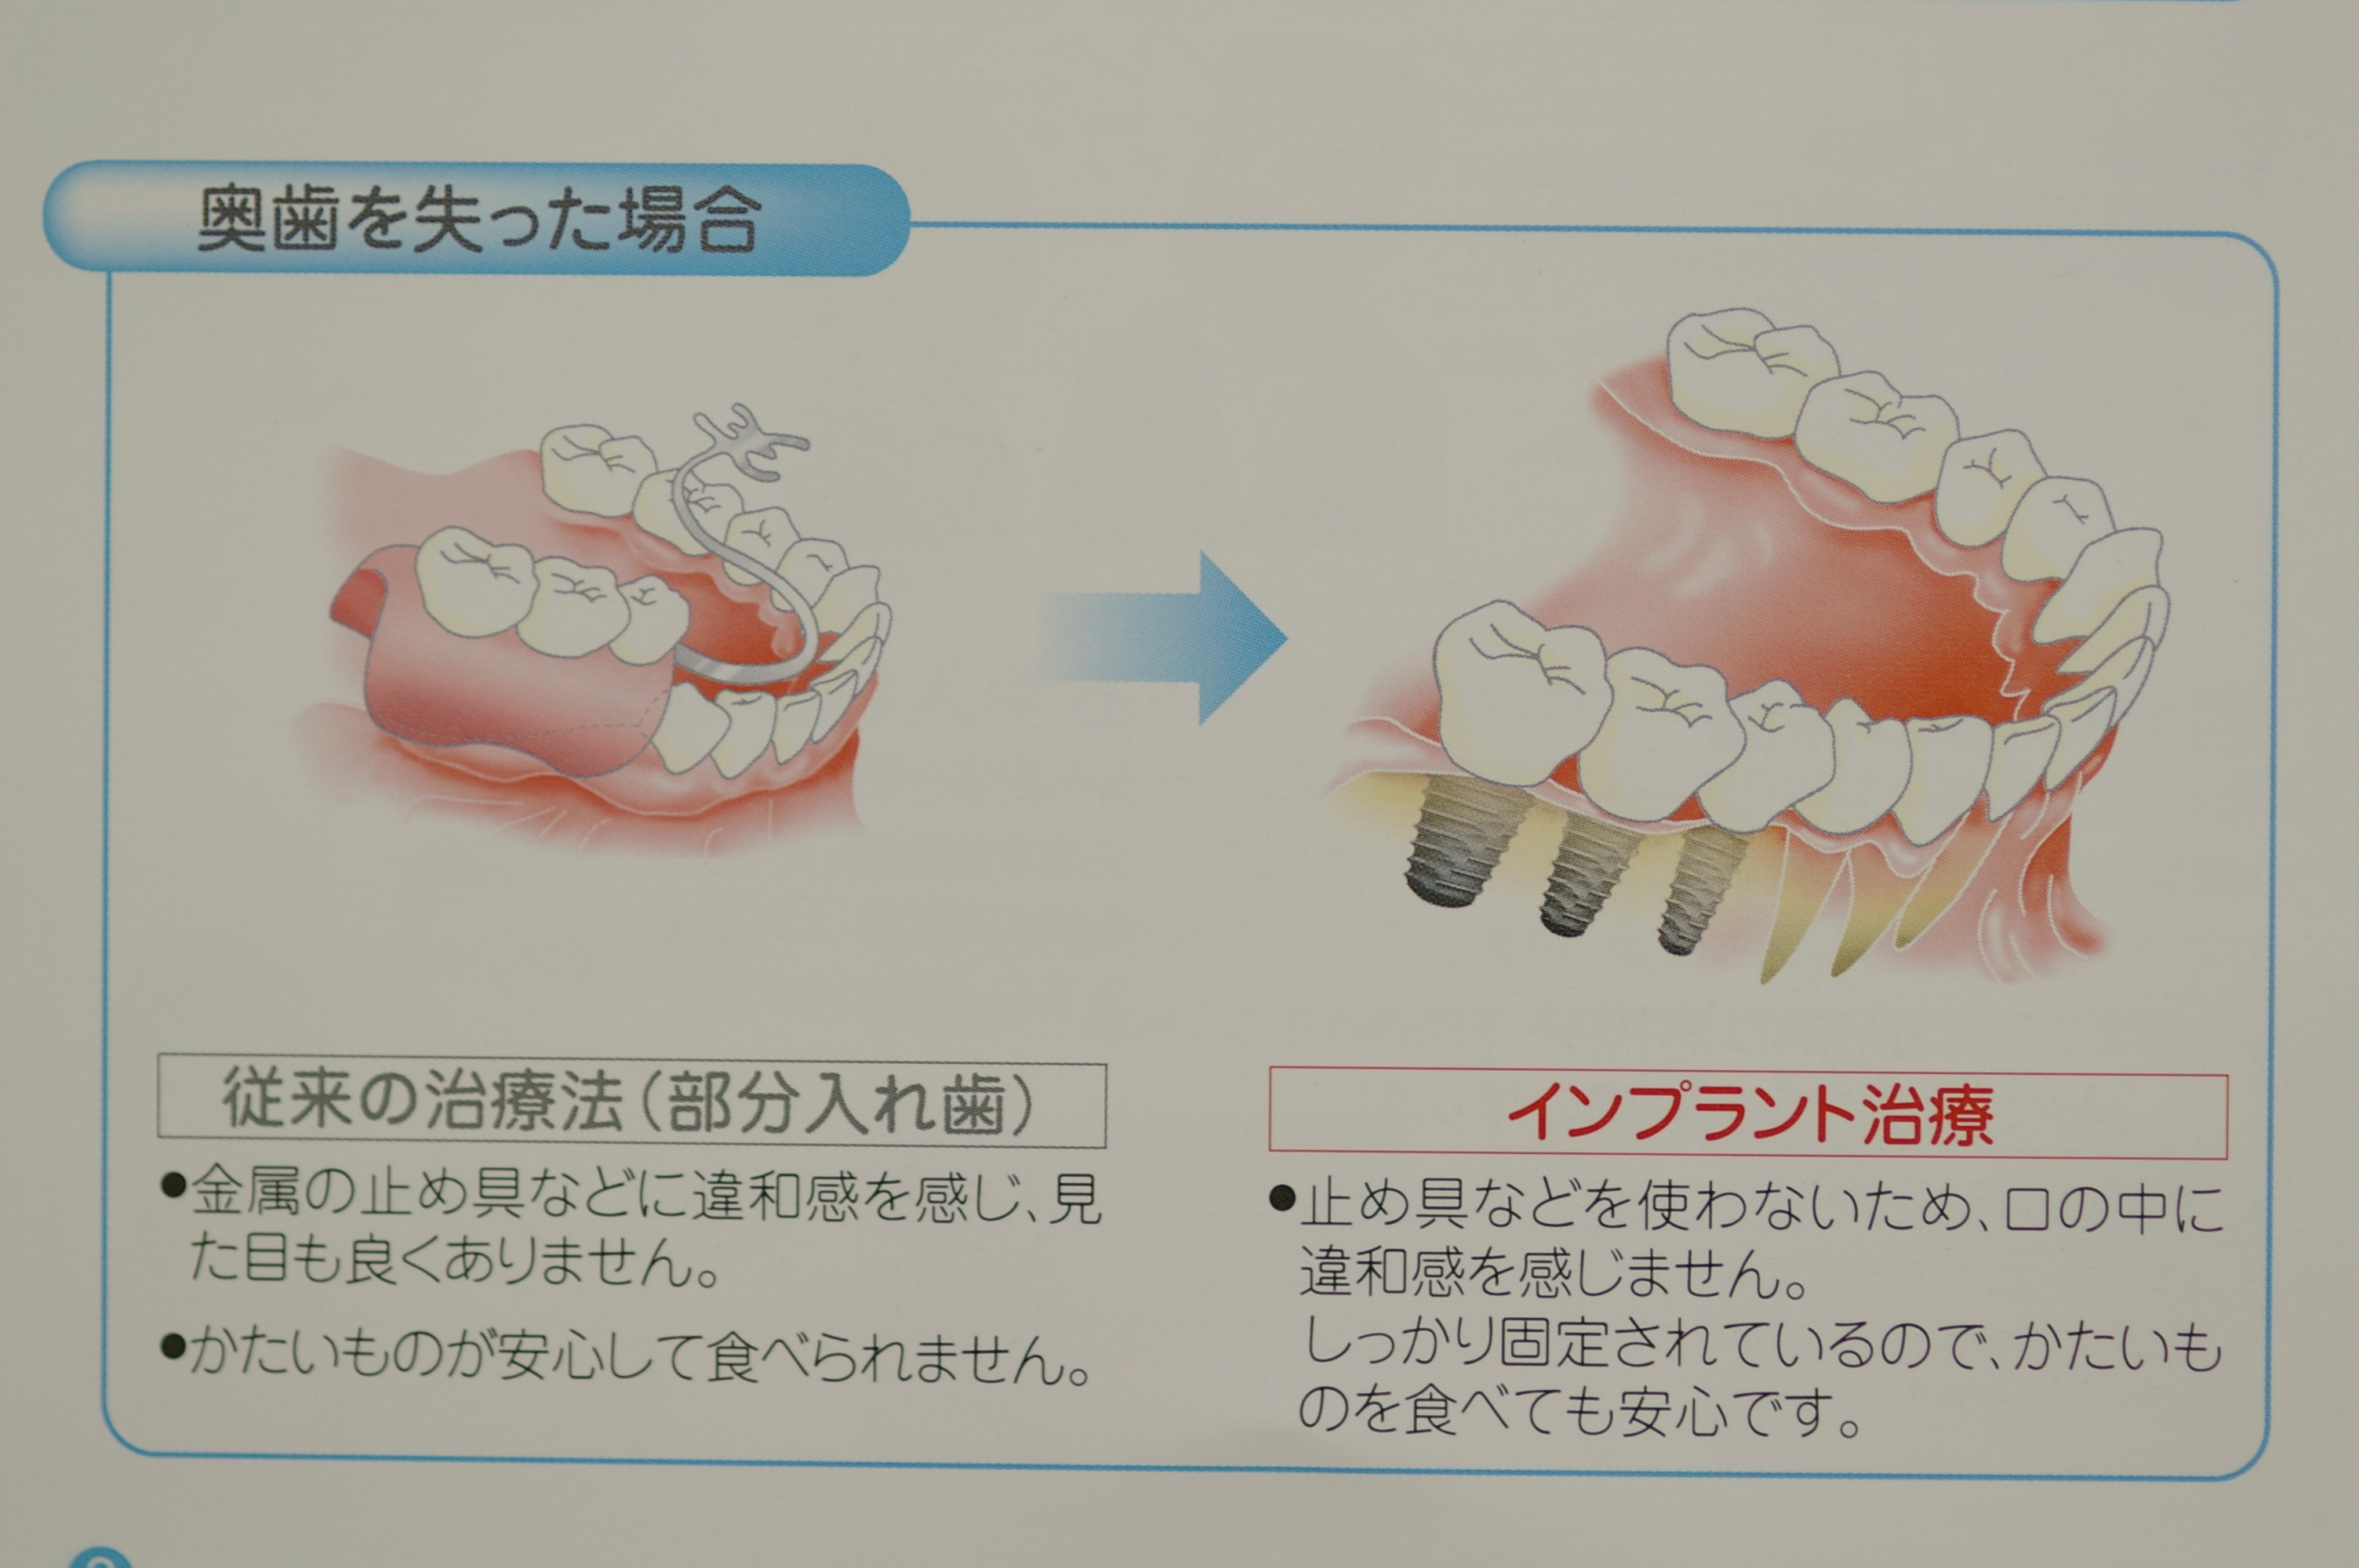 入れ歯からインプラントに移行した例